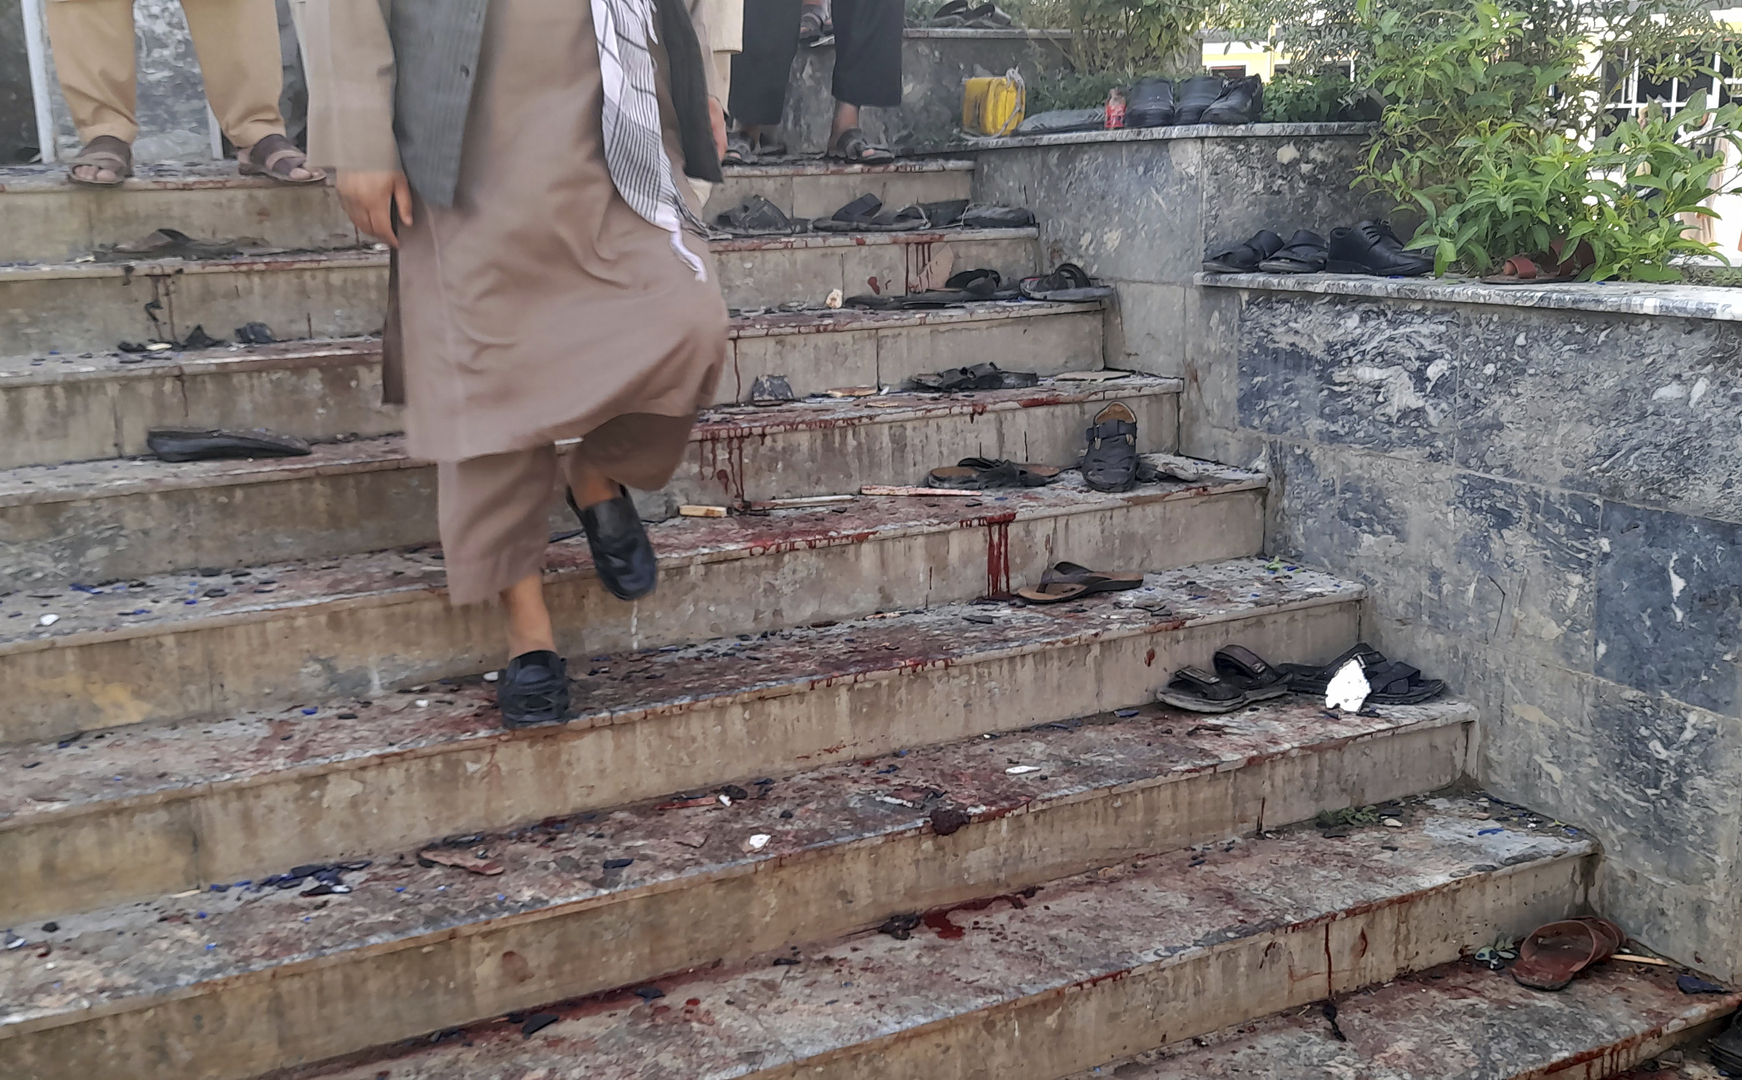 لليوم الثاني على التوالي.. عشرات القتلى جراء انفجار دموي بمسجد في أفغانستان